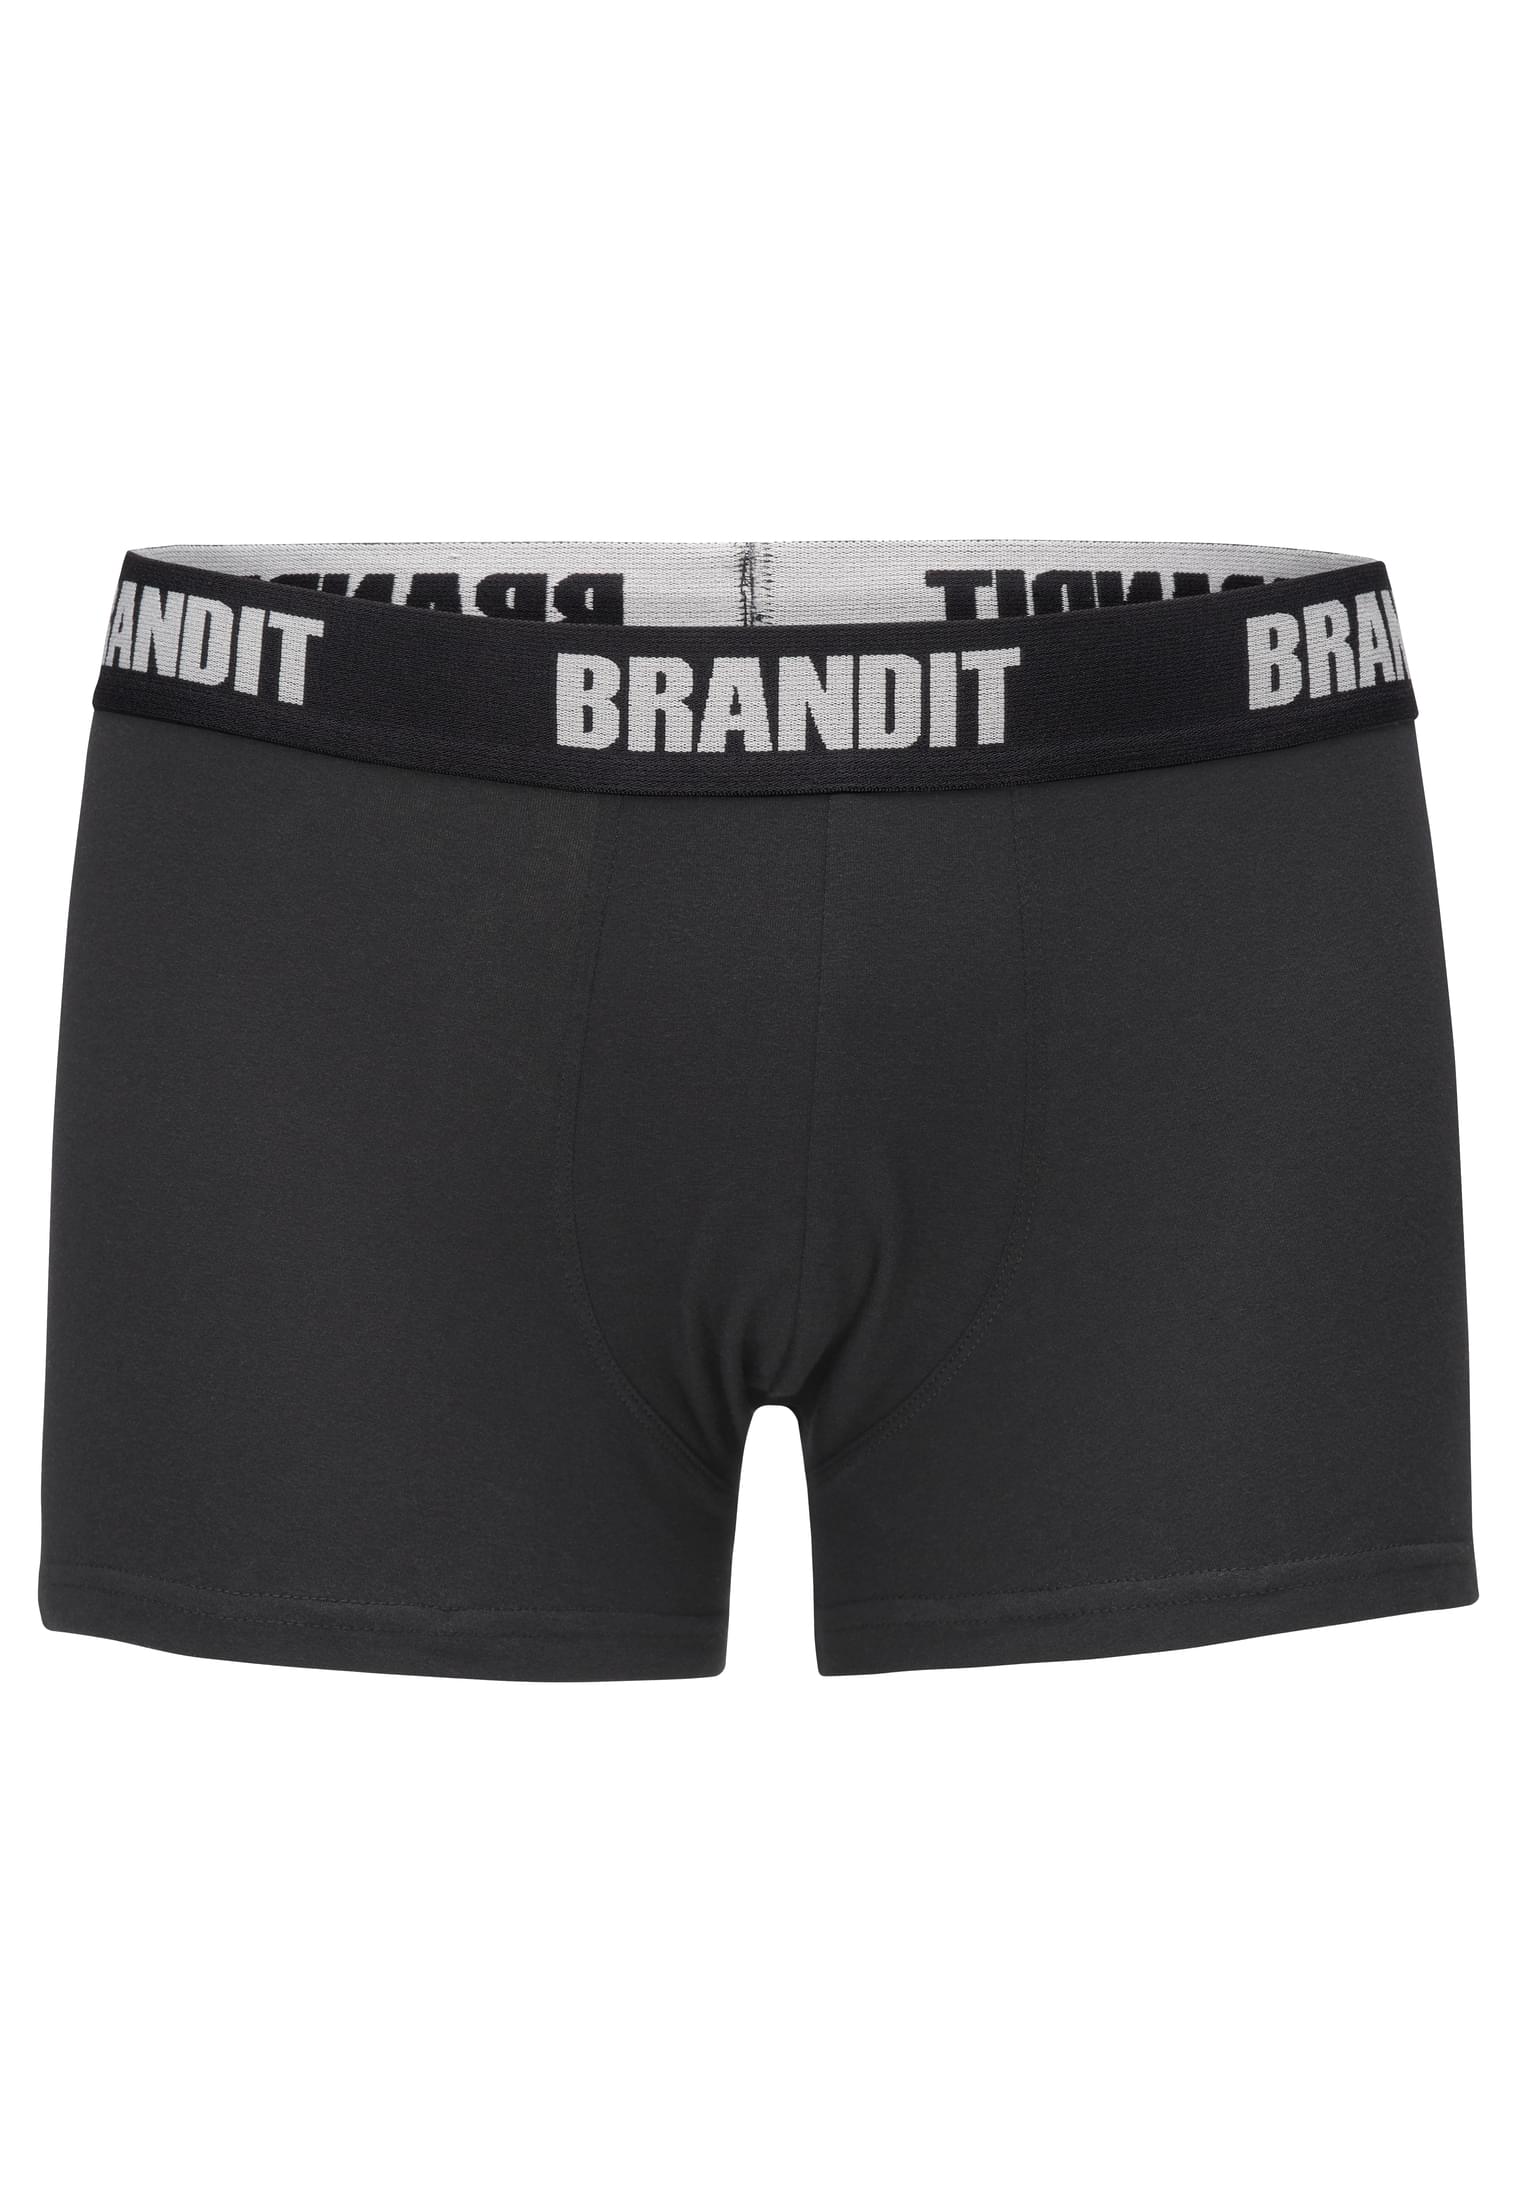 Brandit Boxershorts Logo 2-Pack